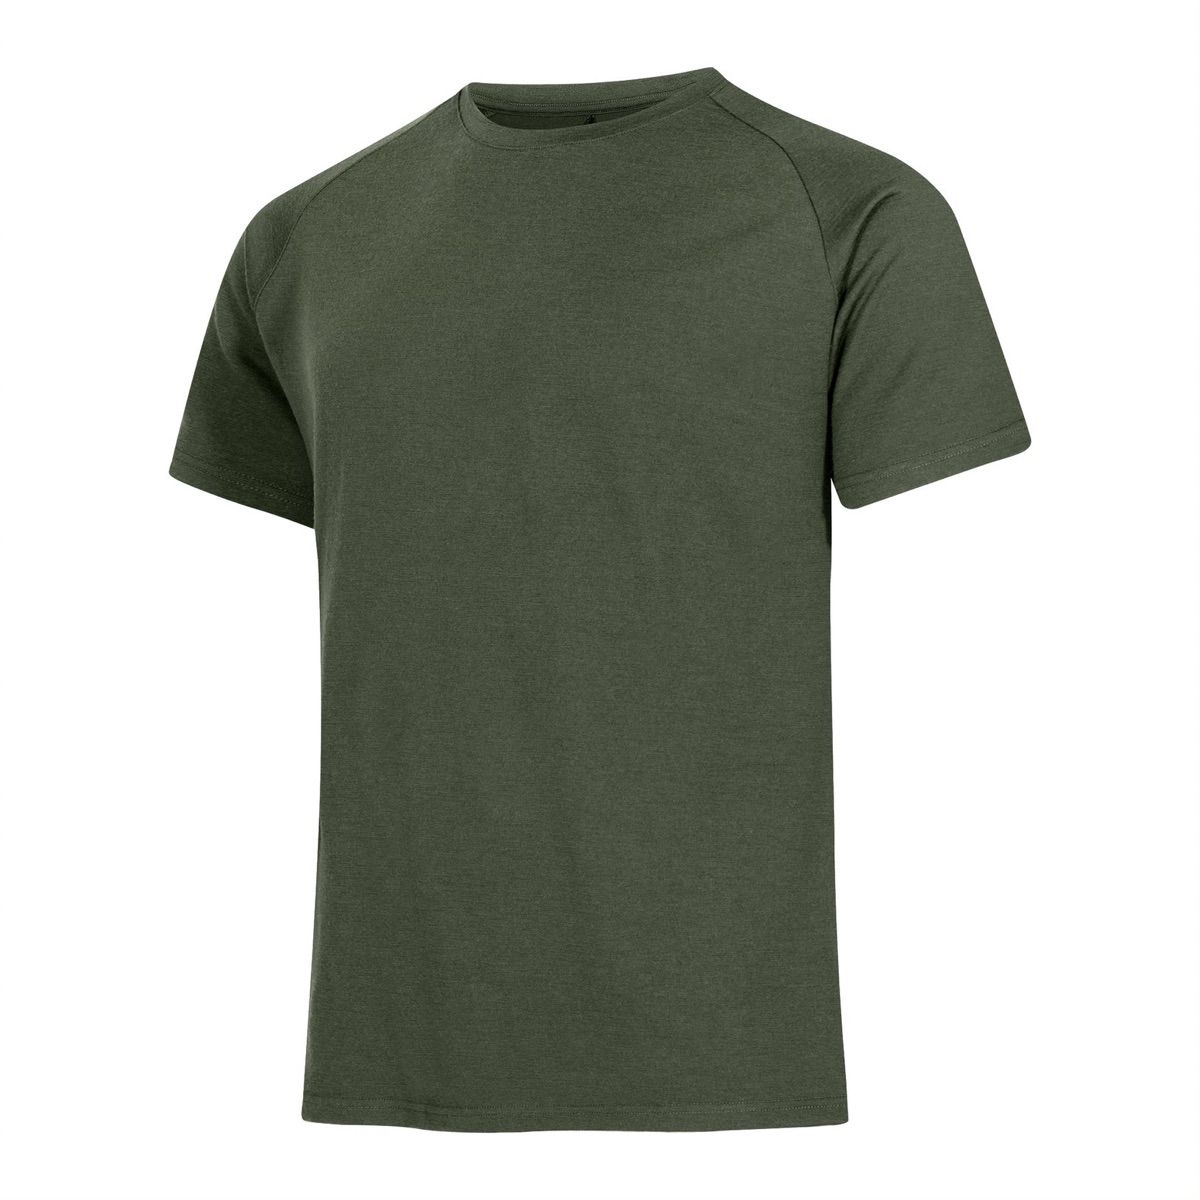 Urberg Lyngen Merino T-shirt Men Green